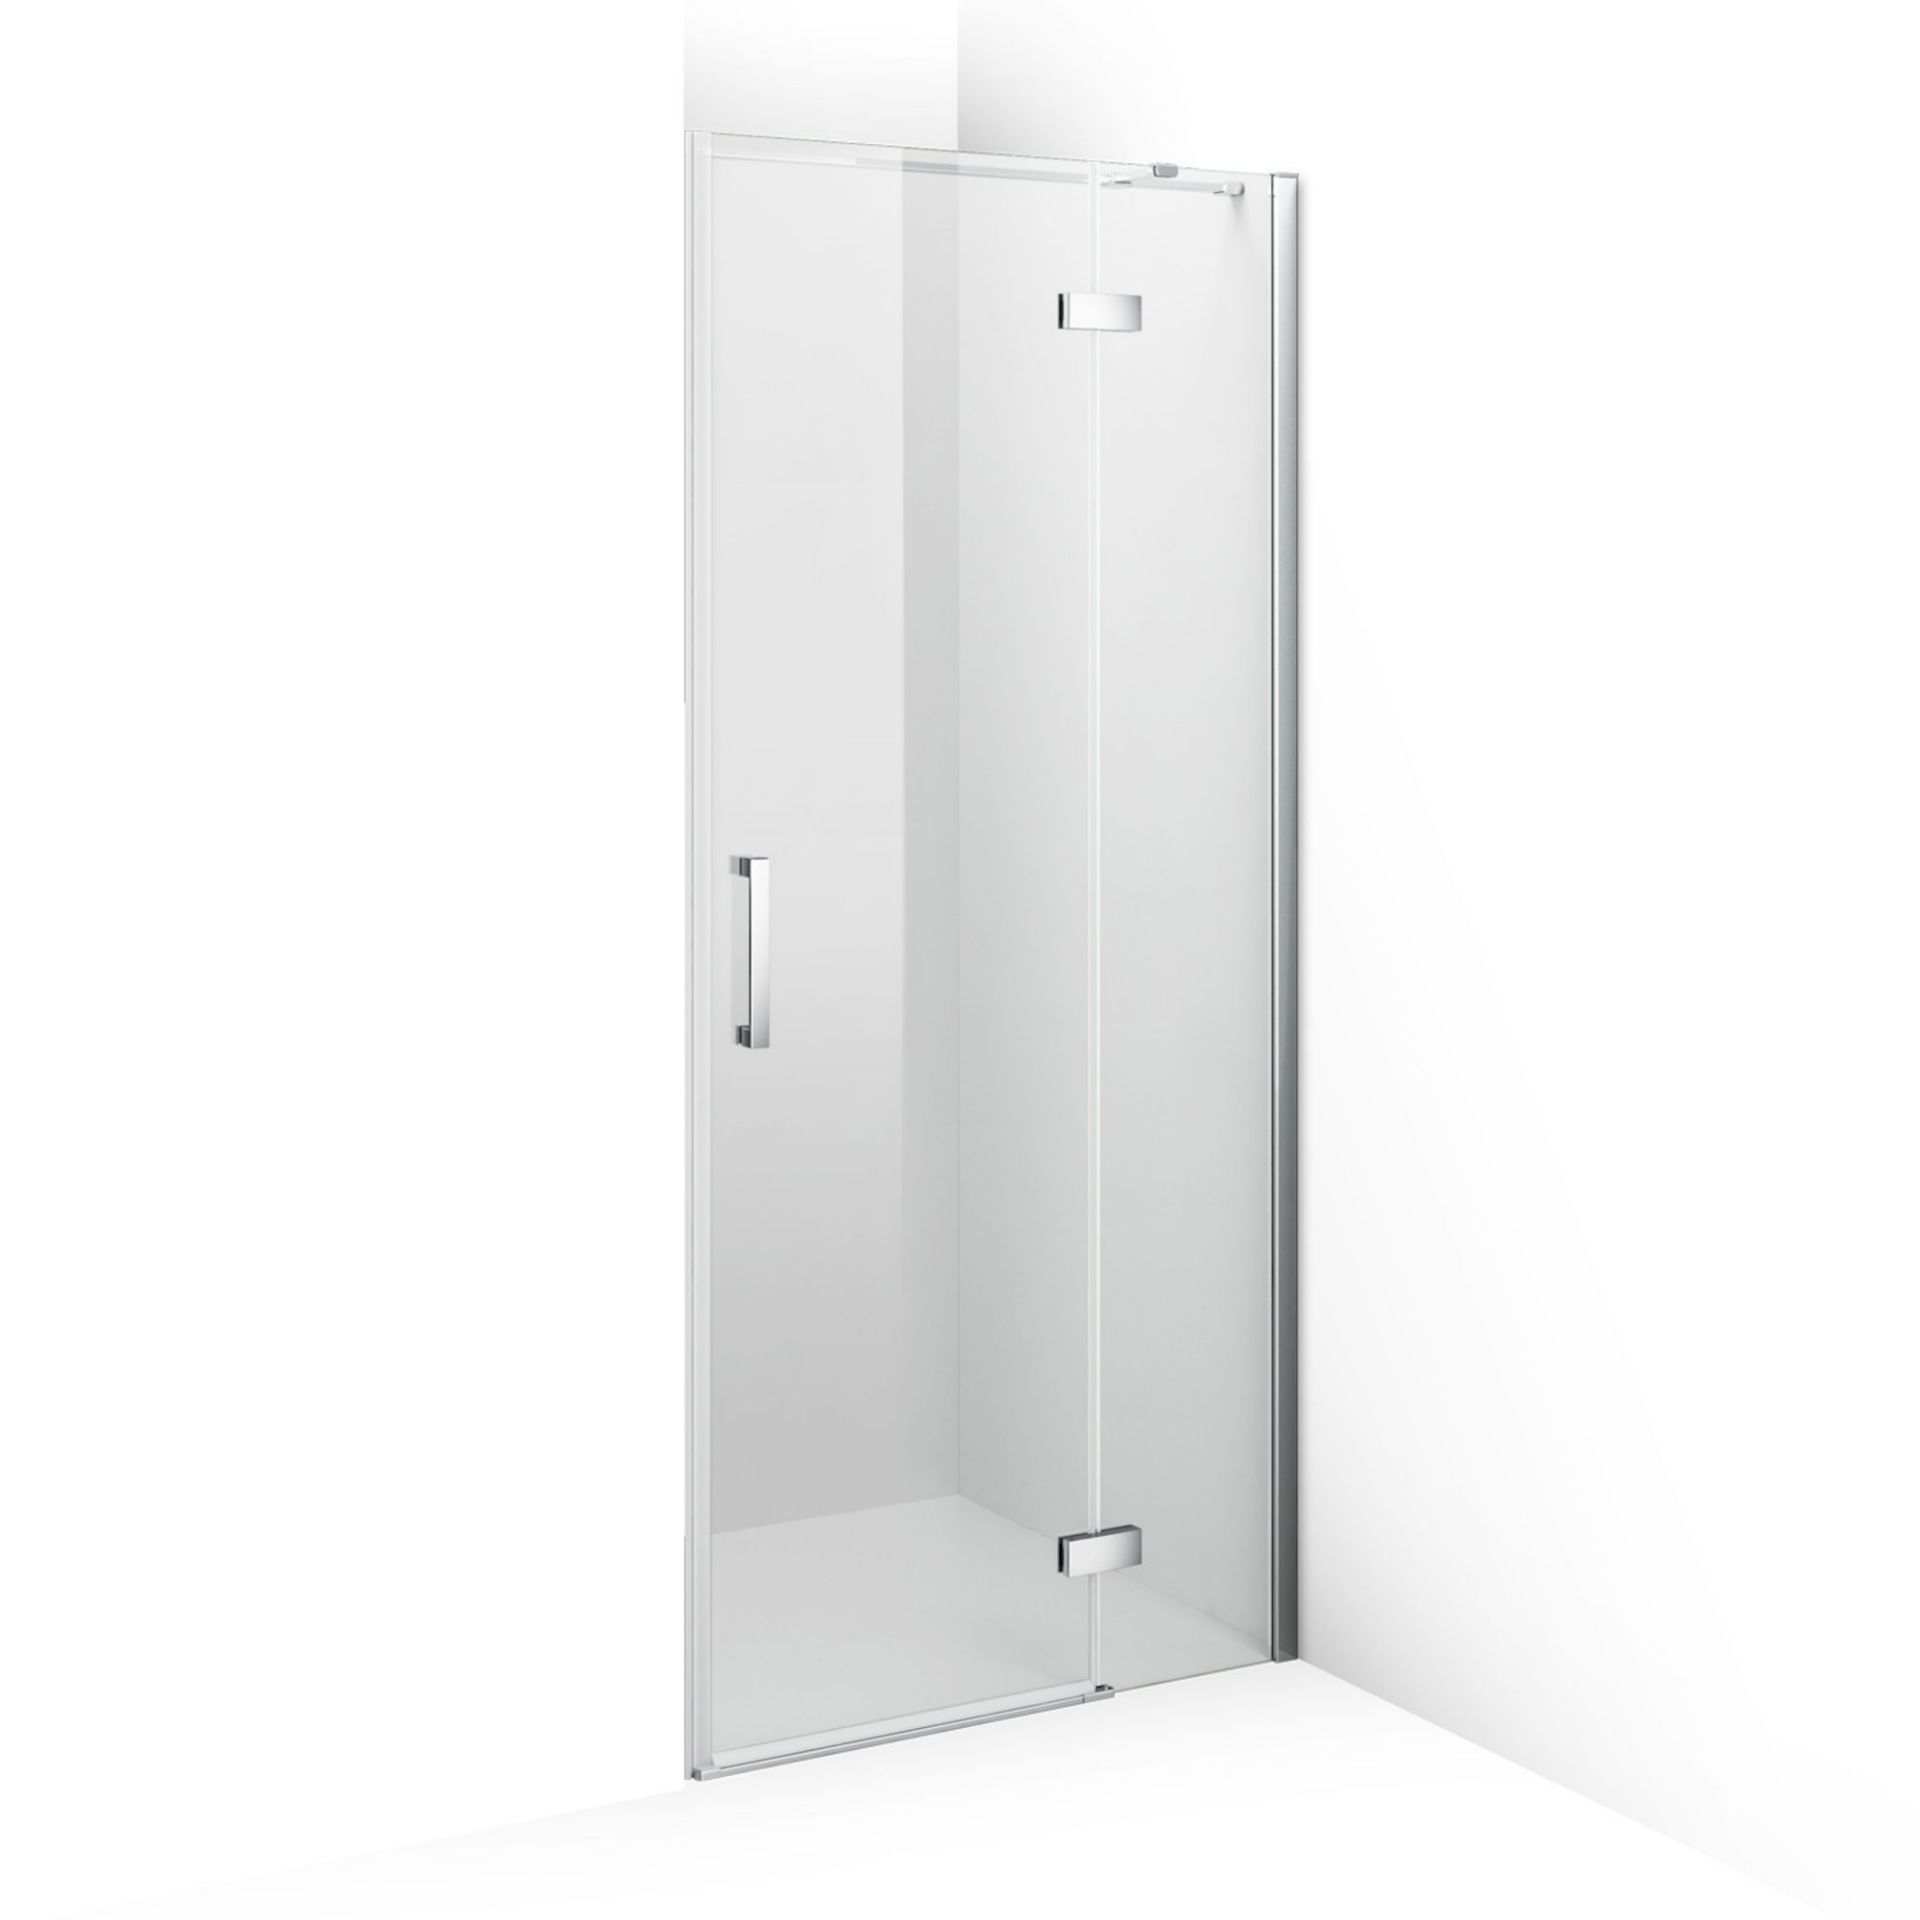 (PP45) 800mm - 8mm - Premium EasyClean Hinged Shower Door. RRP £377.99. 8mm EasyClean glass - ... - Image 4 of 5